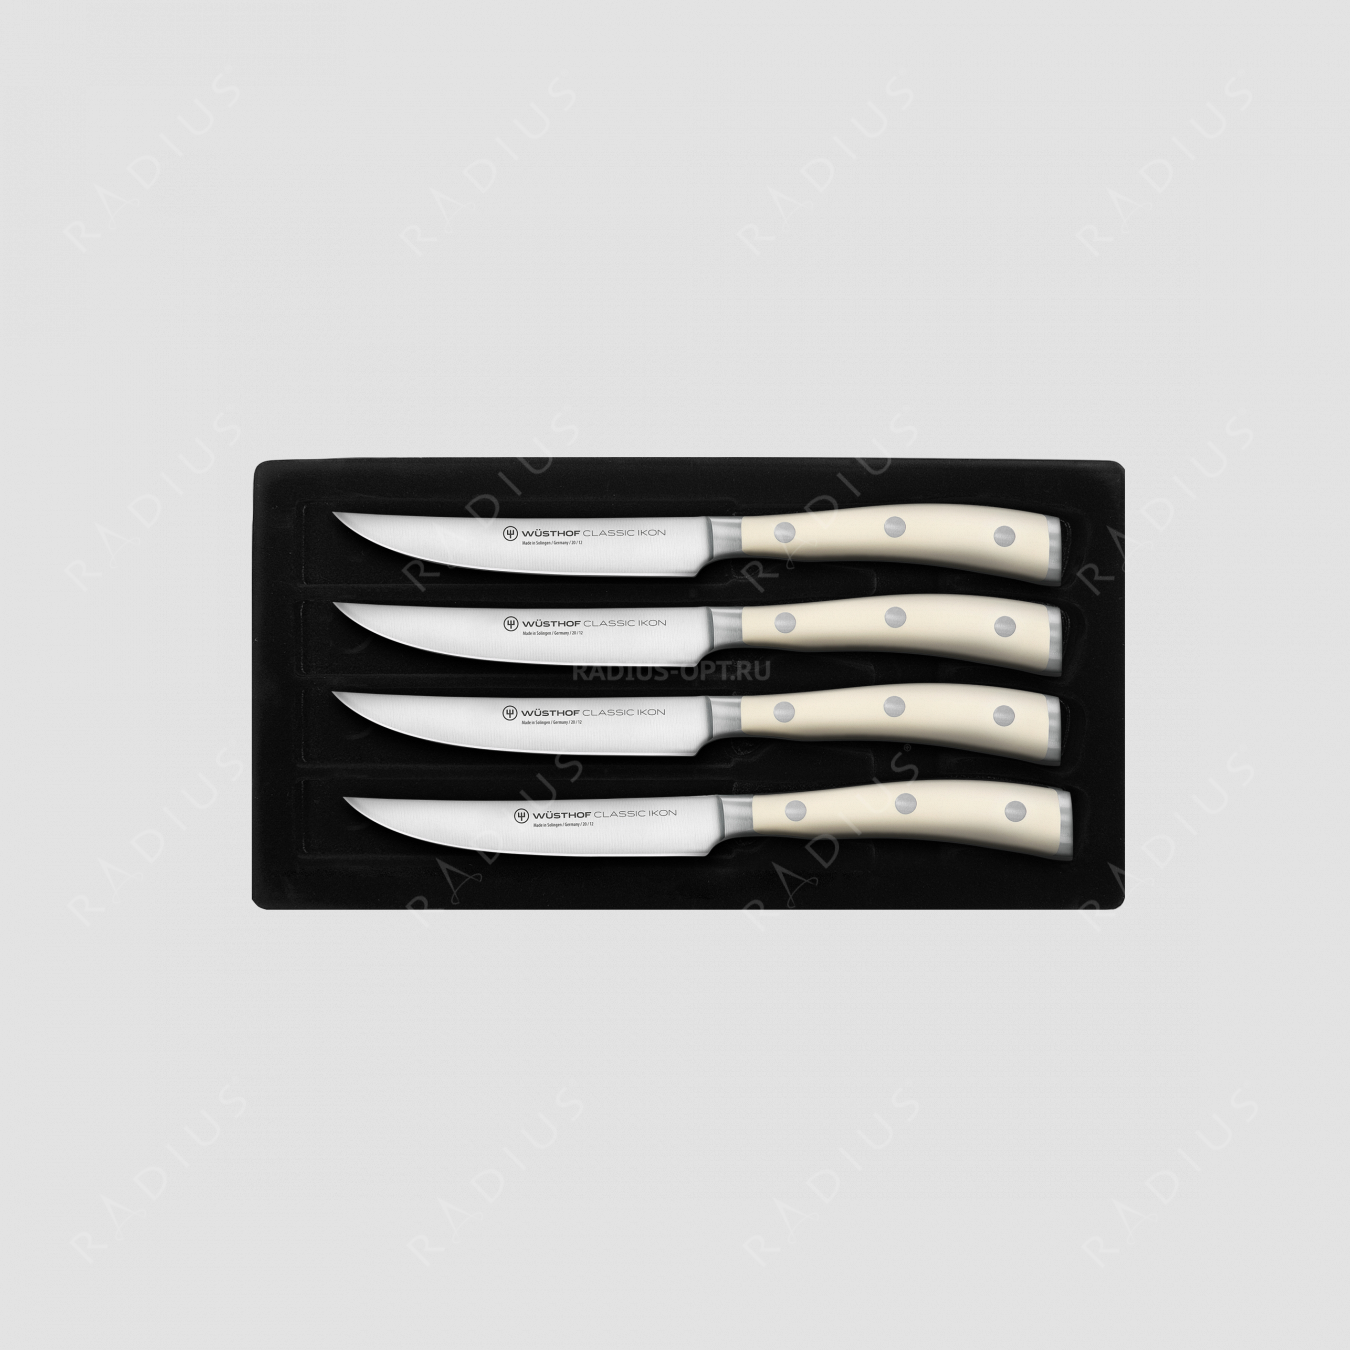 Набор кухонных ножей для стейка 4 штуки, серия Ikon Cream White, WUESTHOF, Золинген, Германия